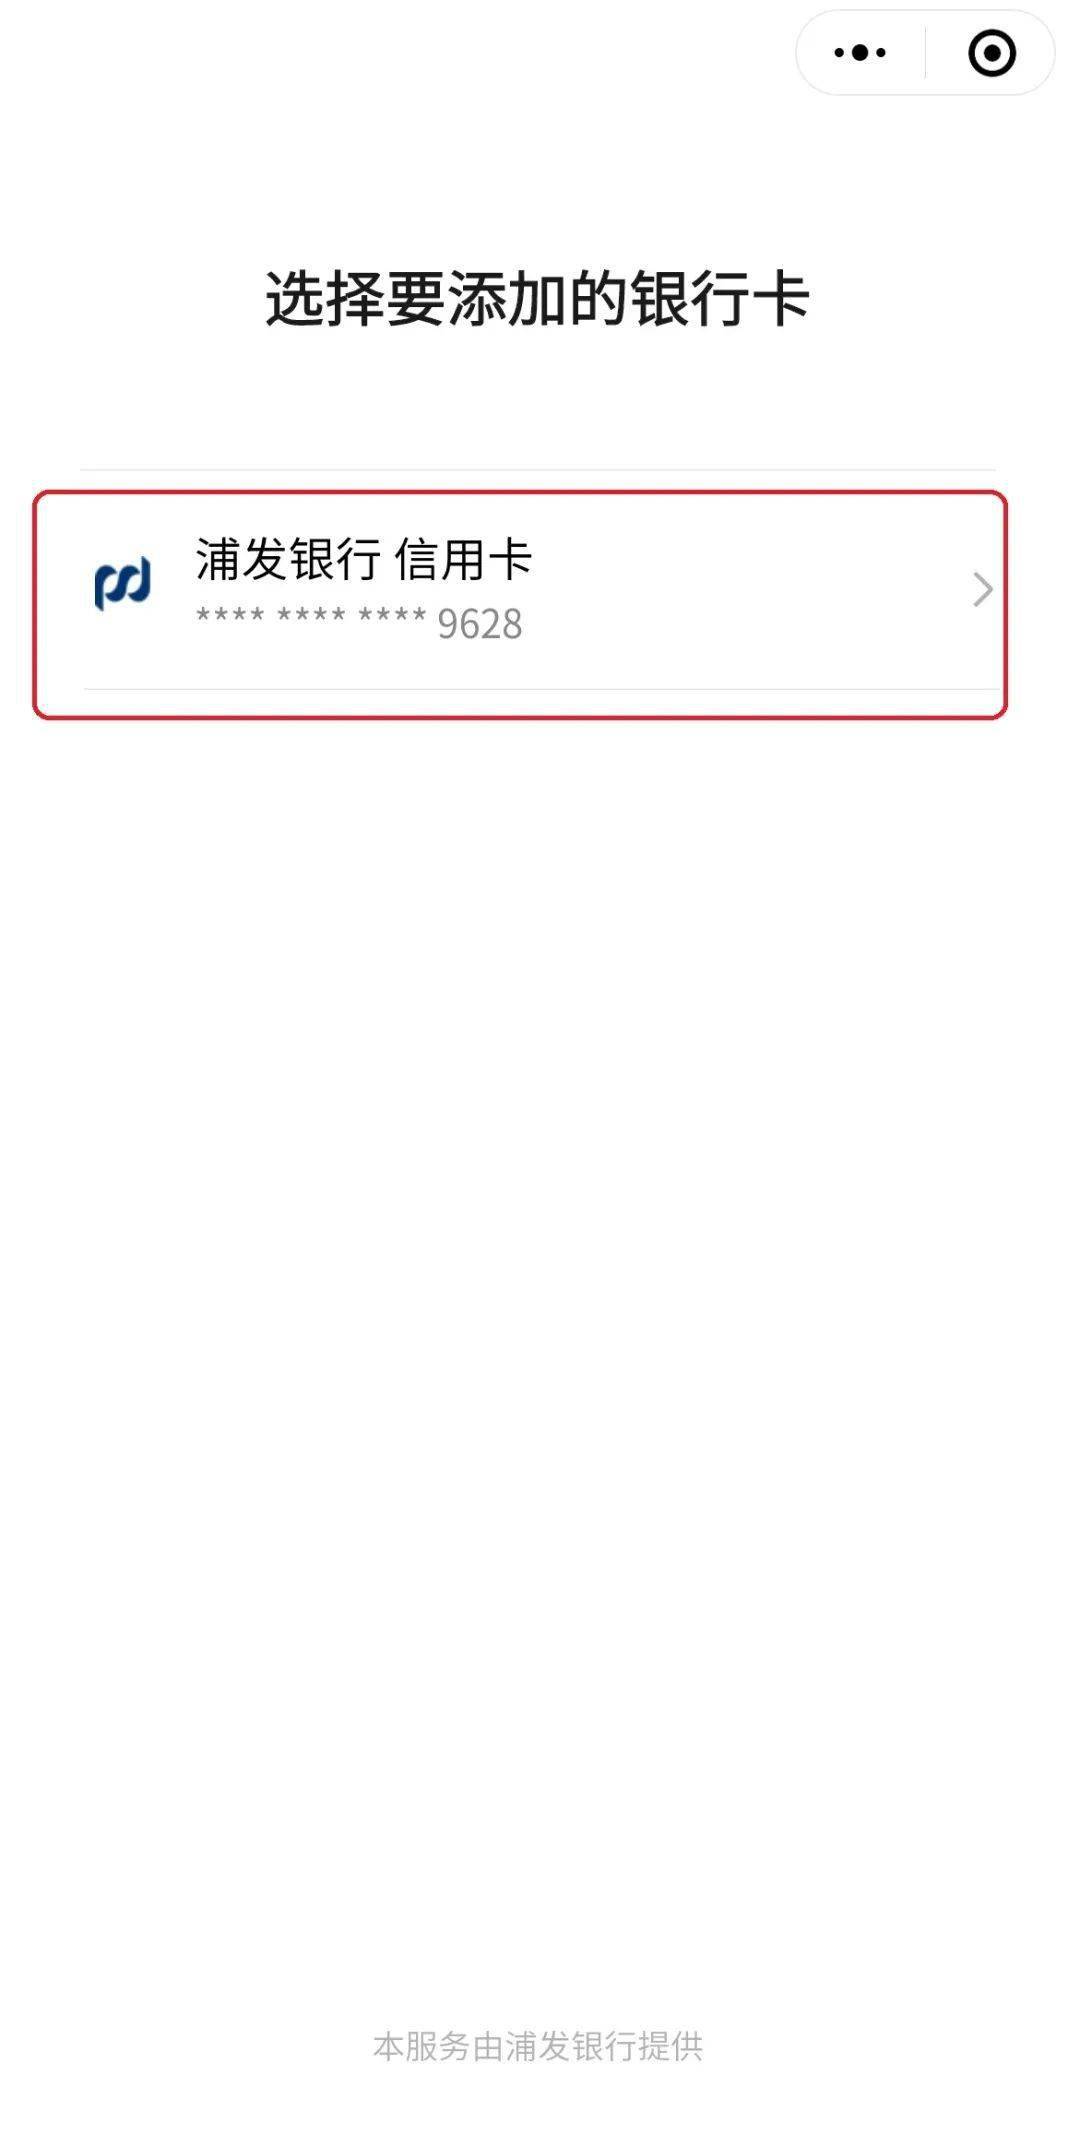 新功能浦发银行支持微信支付免输卡号绑定功能